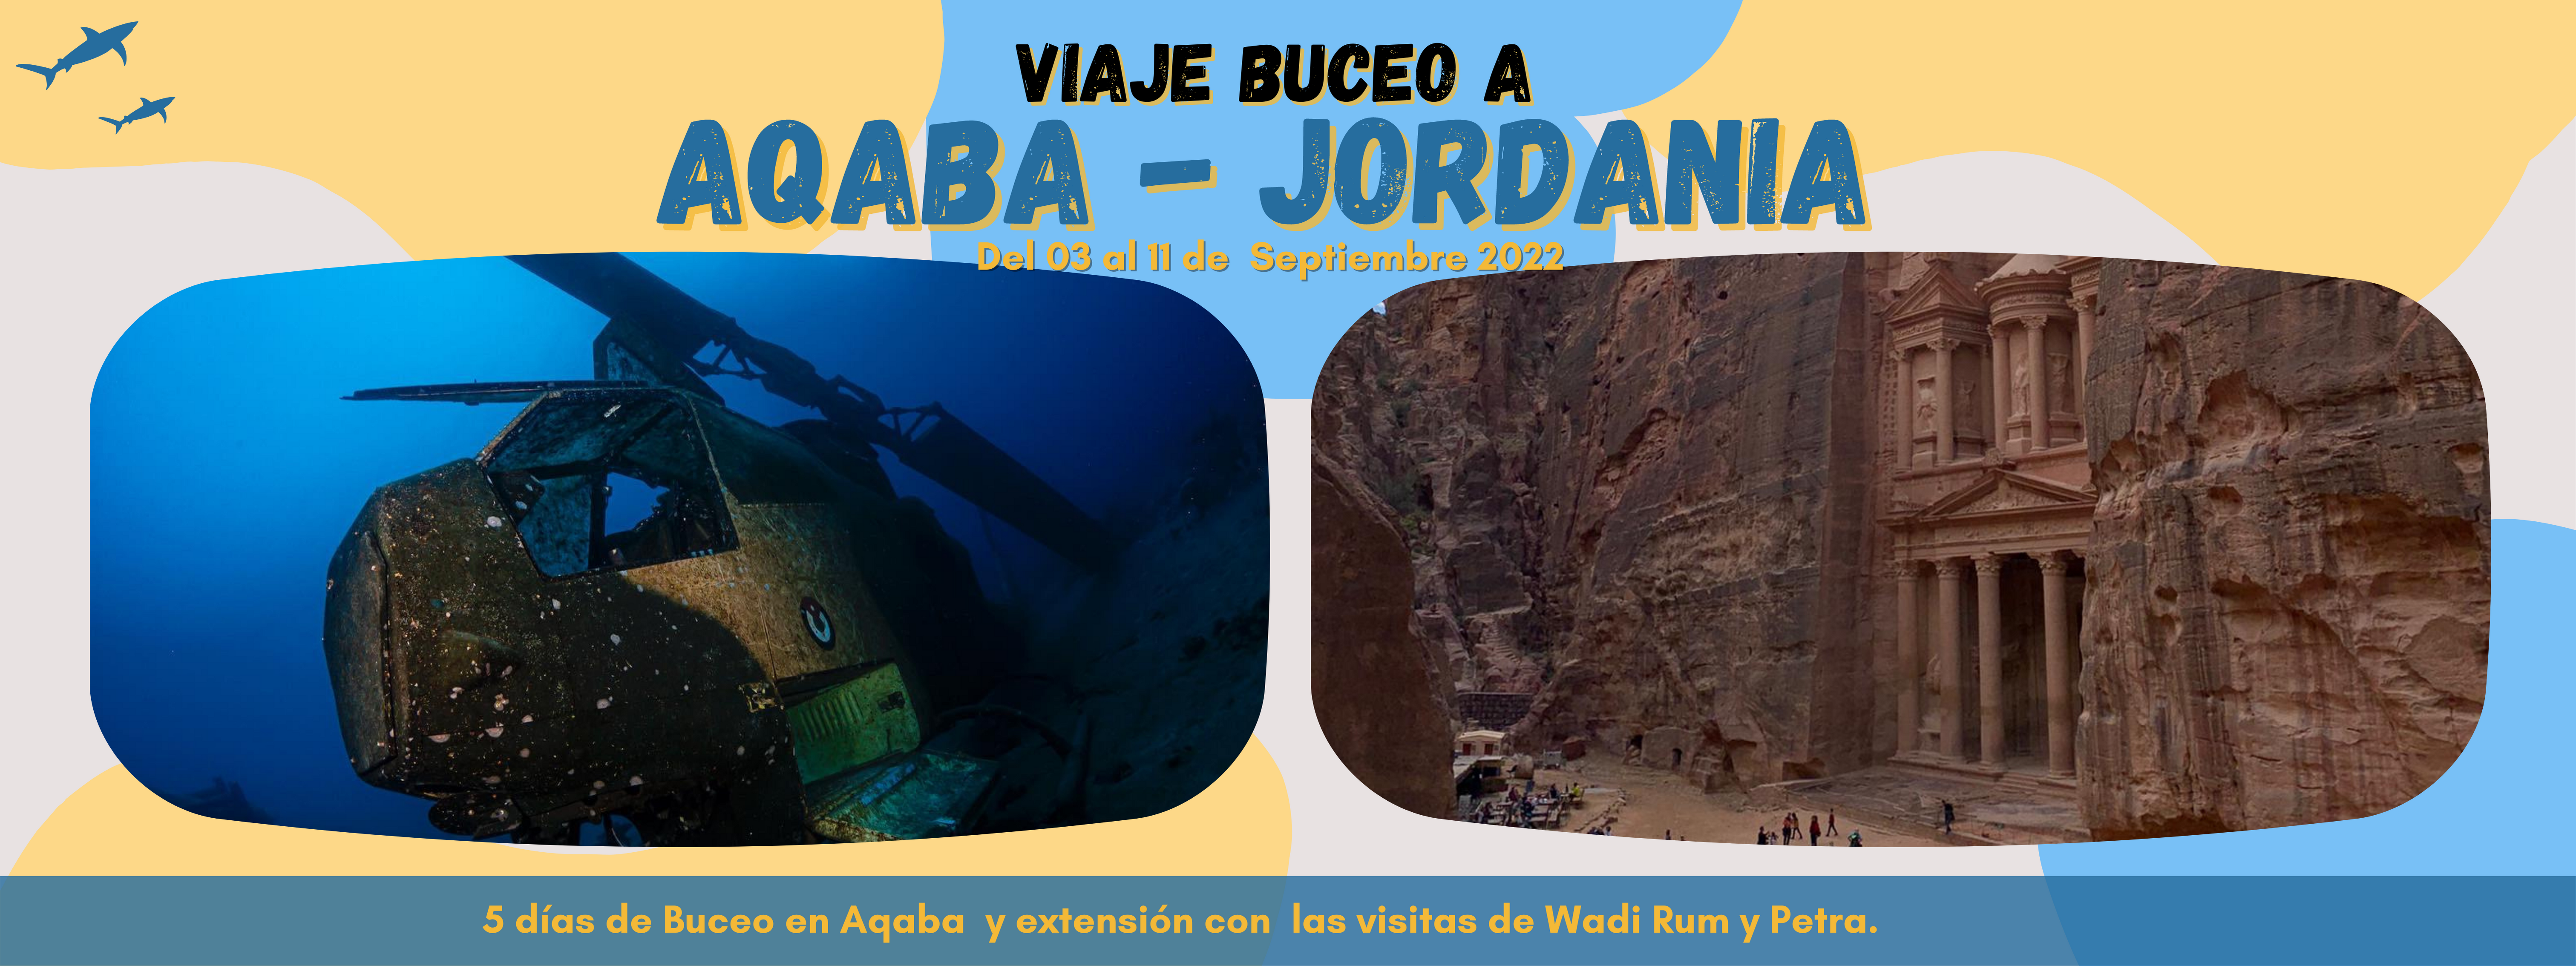 viaje_buceo_aqaba